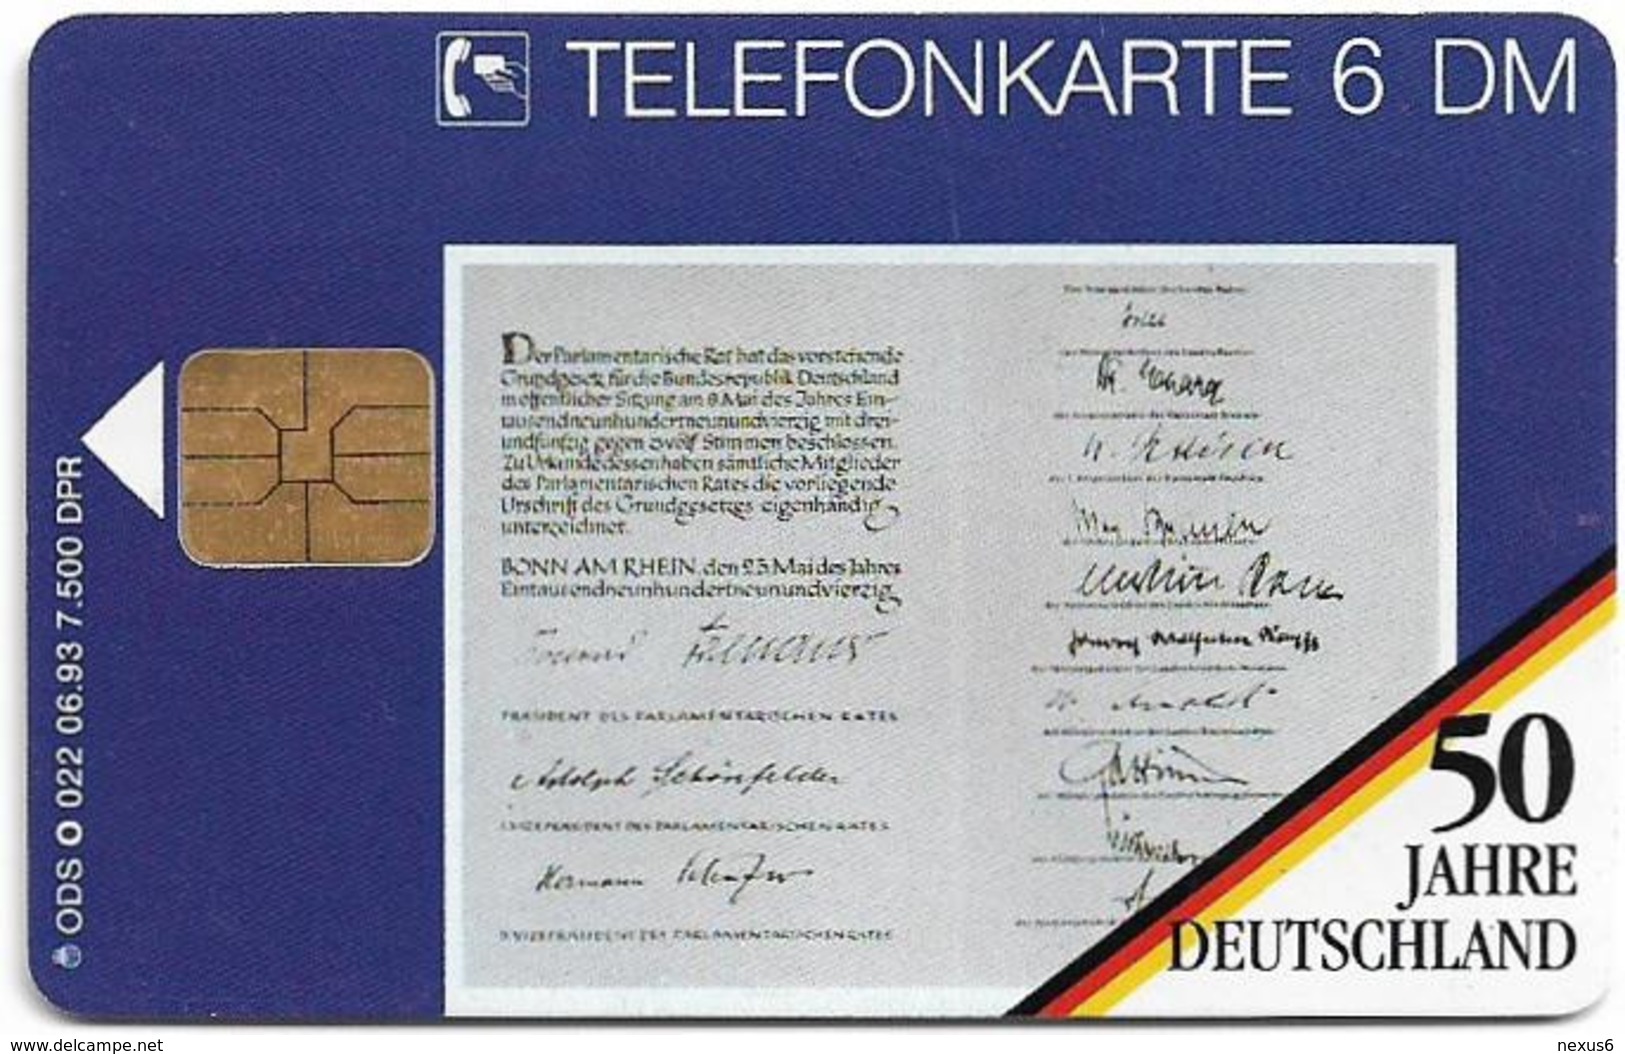 Germany - 50 Jahre Deutschland - Konrad Adenauer - O 0022 - 06.93, 6DM, 7.500ex, Used - O-Series : Séries Client